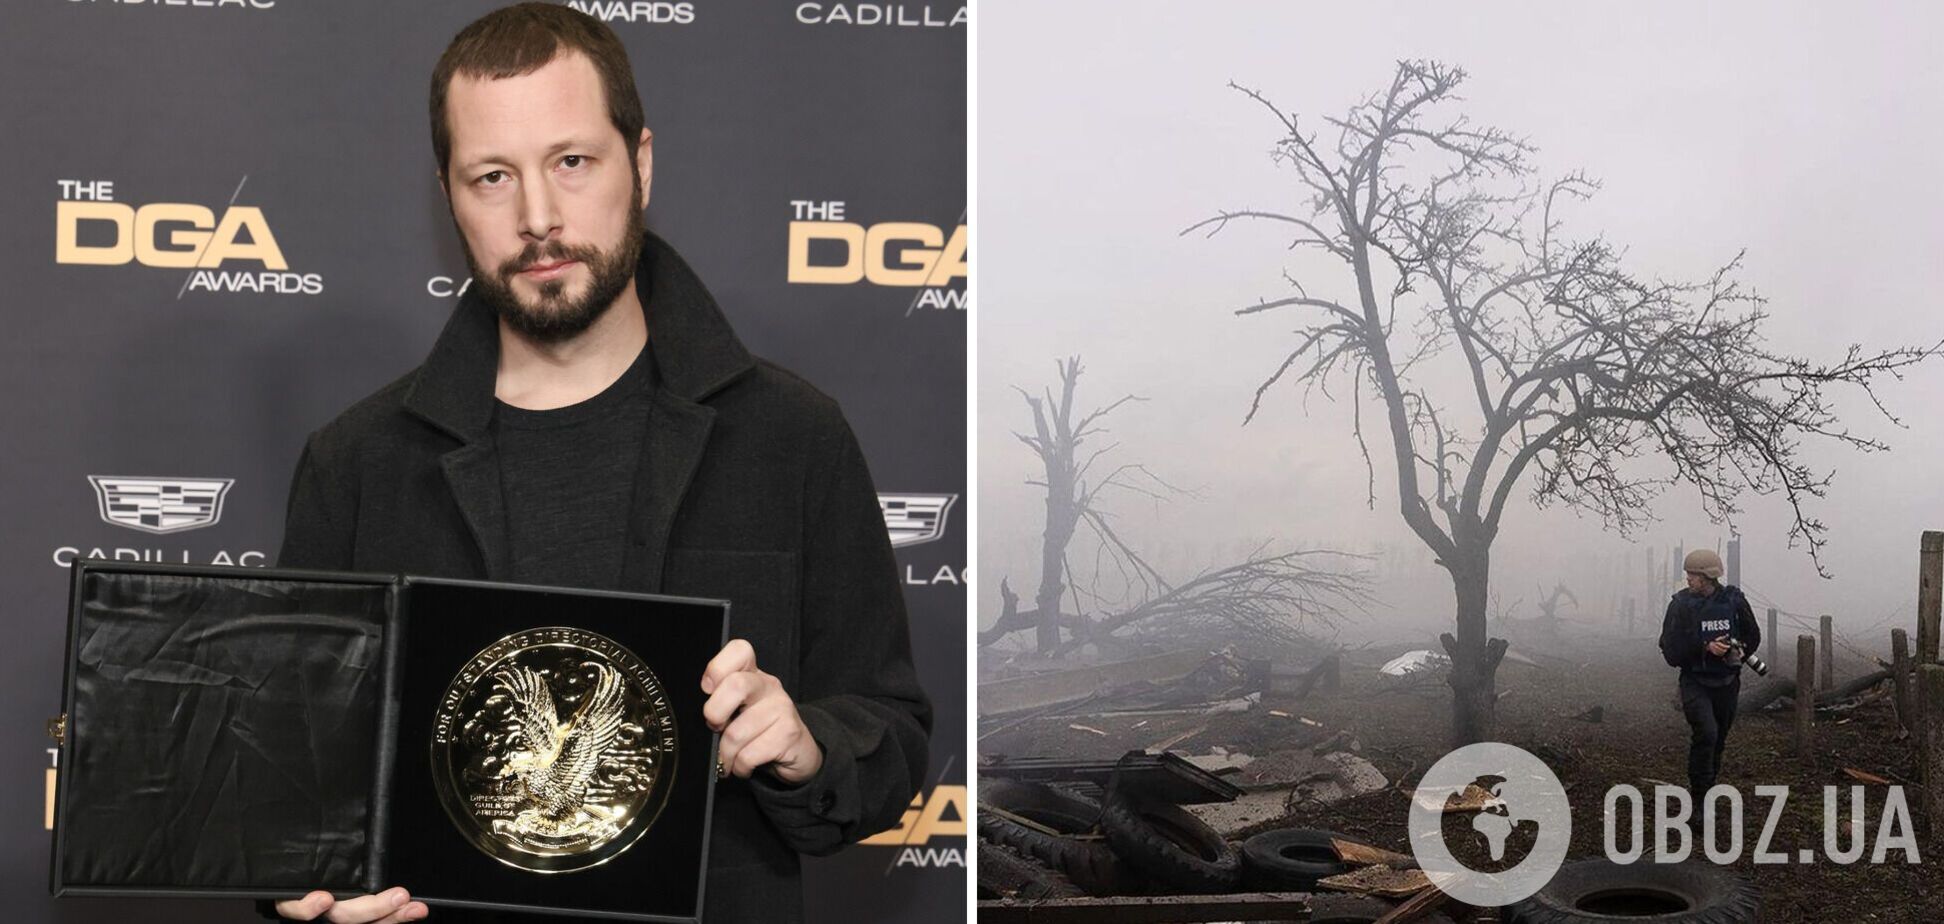 Режисер '20 днів у Маріуполі' Мстислав Чернов отримав премію Гільдії режисерів США, яку називають репетицією 'Оскара'
